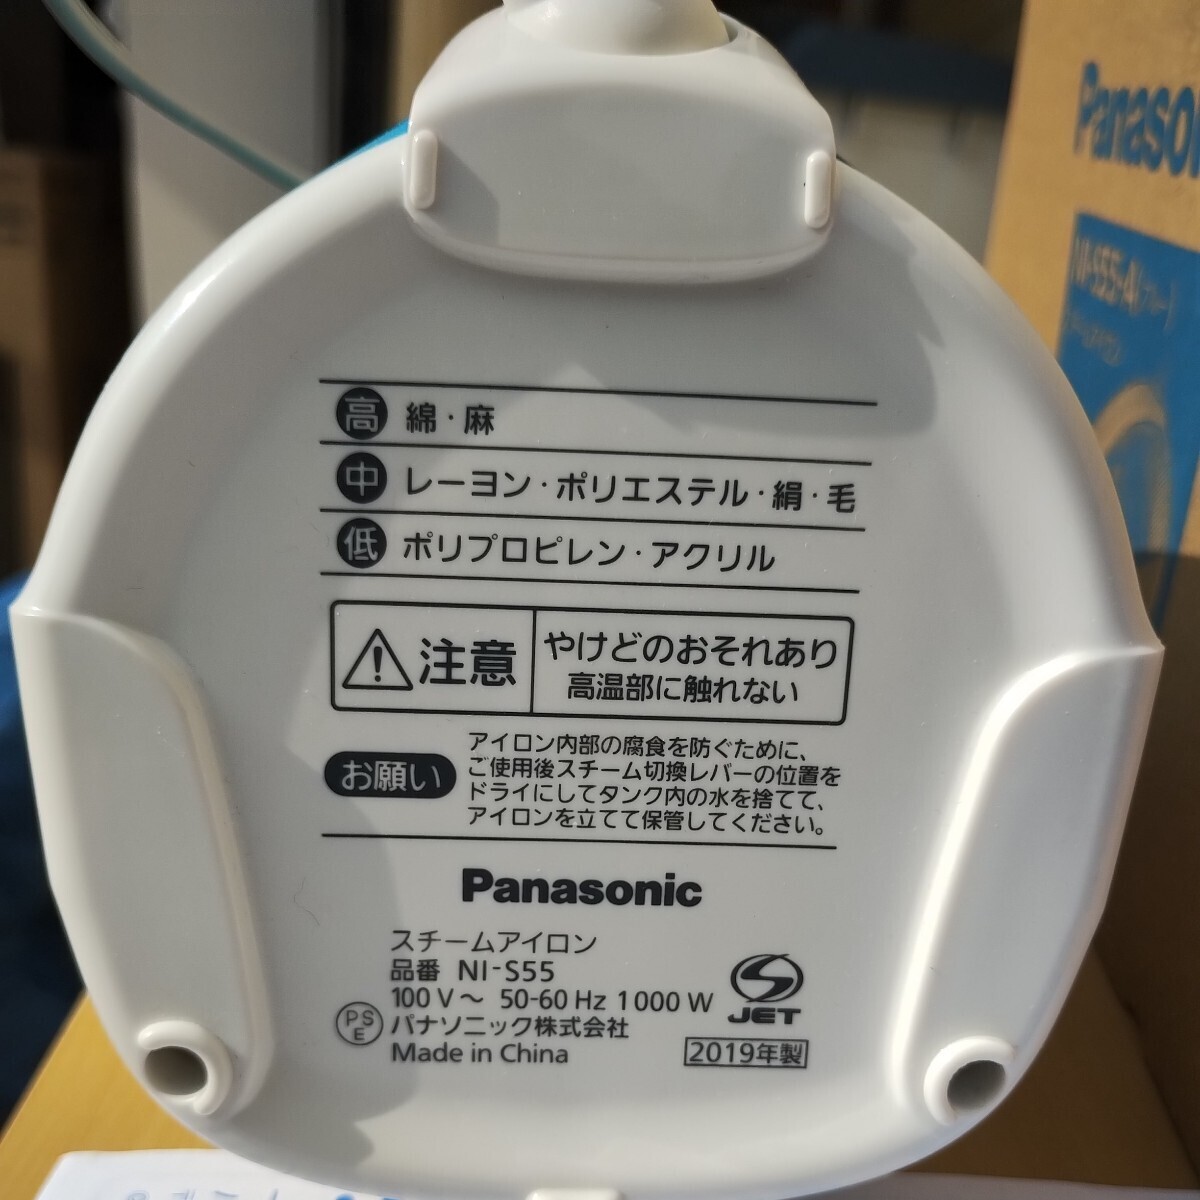 [2019 год производства ] рабочее состояние подтверждено Panasonic паровой утюг NI-S55